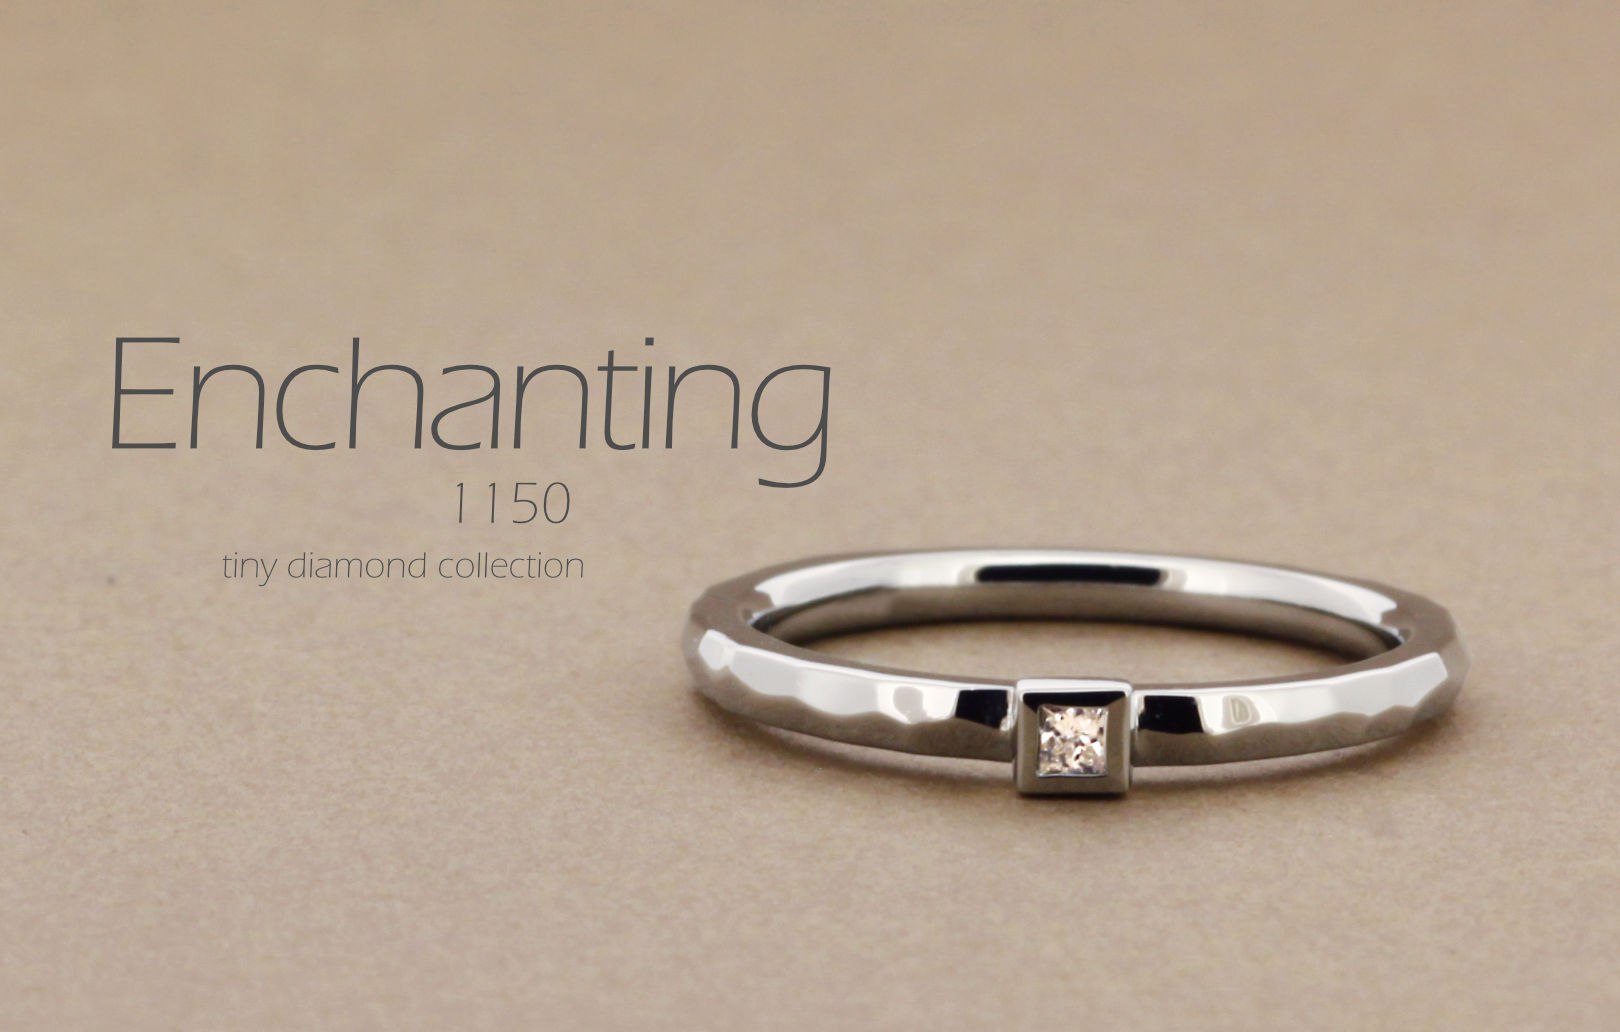 「Enchanting」という名前が付いた、ランダムに槌打った個性的なアームにプリンセスカットのダイヤモンドを留めた指輪の詳細ページ